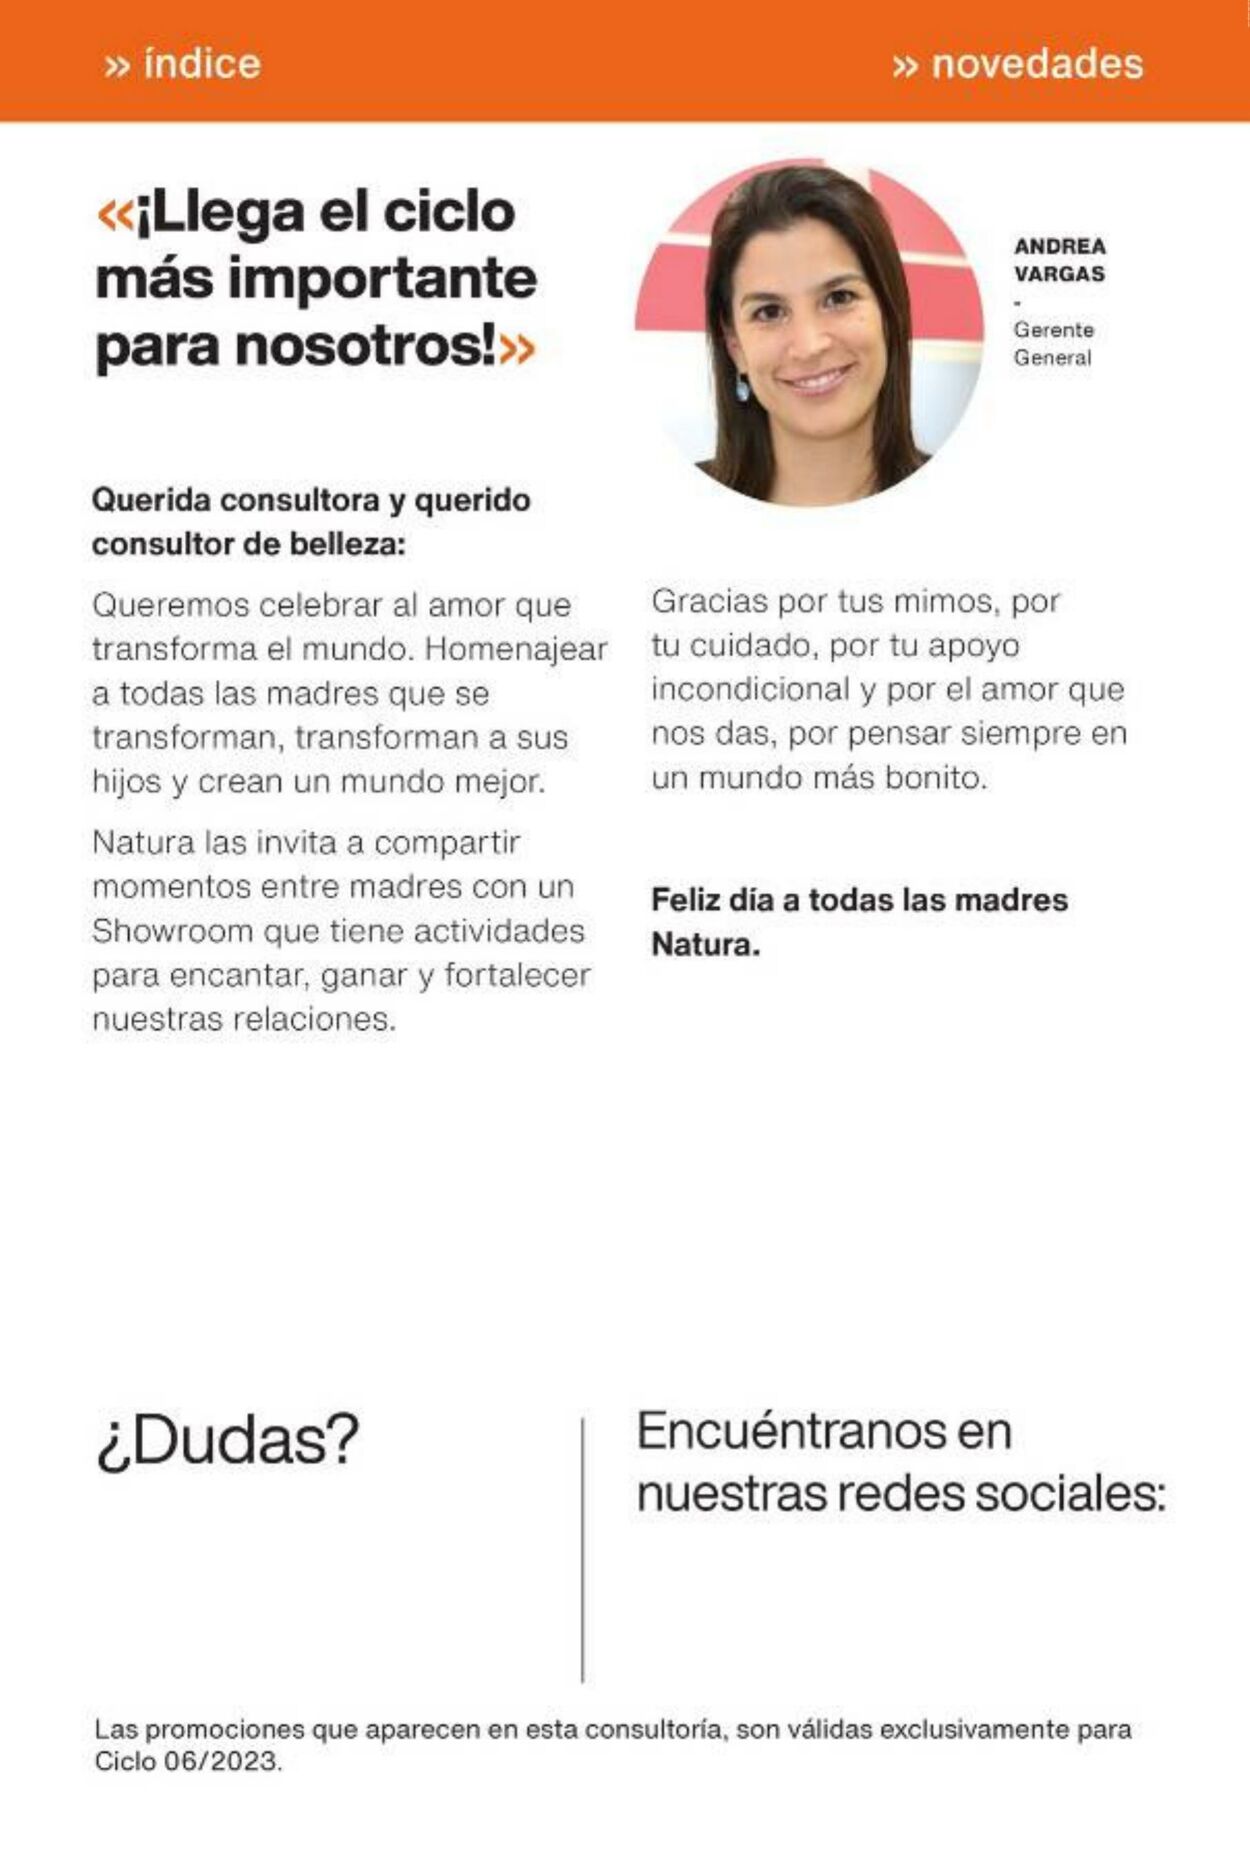 Catálogo Natura 29.03.2023 - 05.05.2023